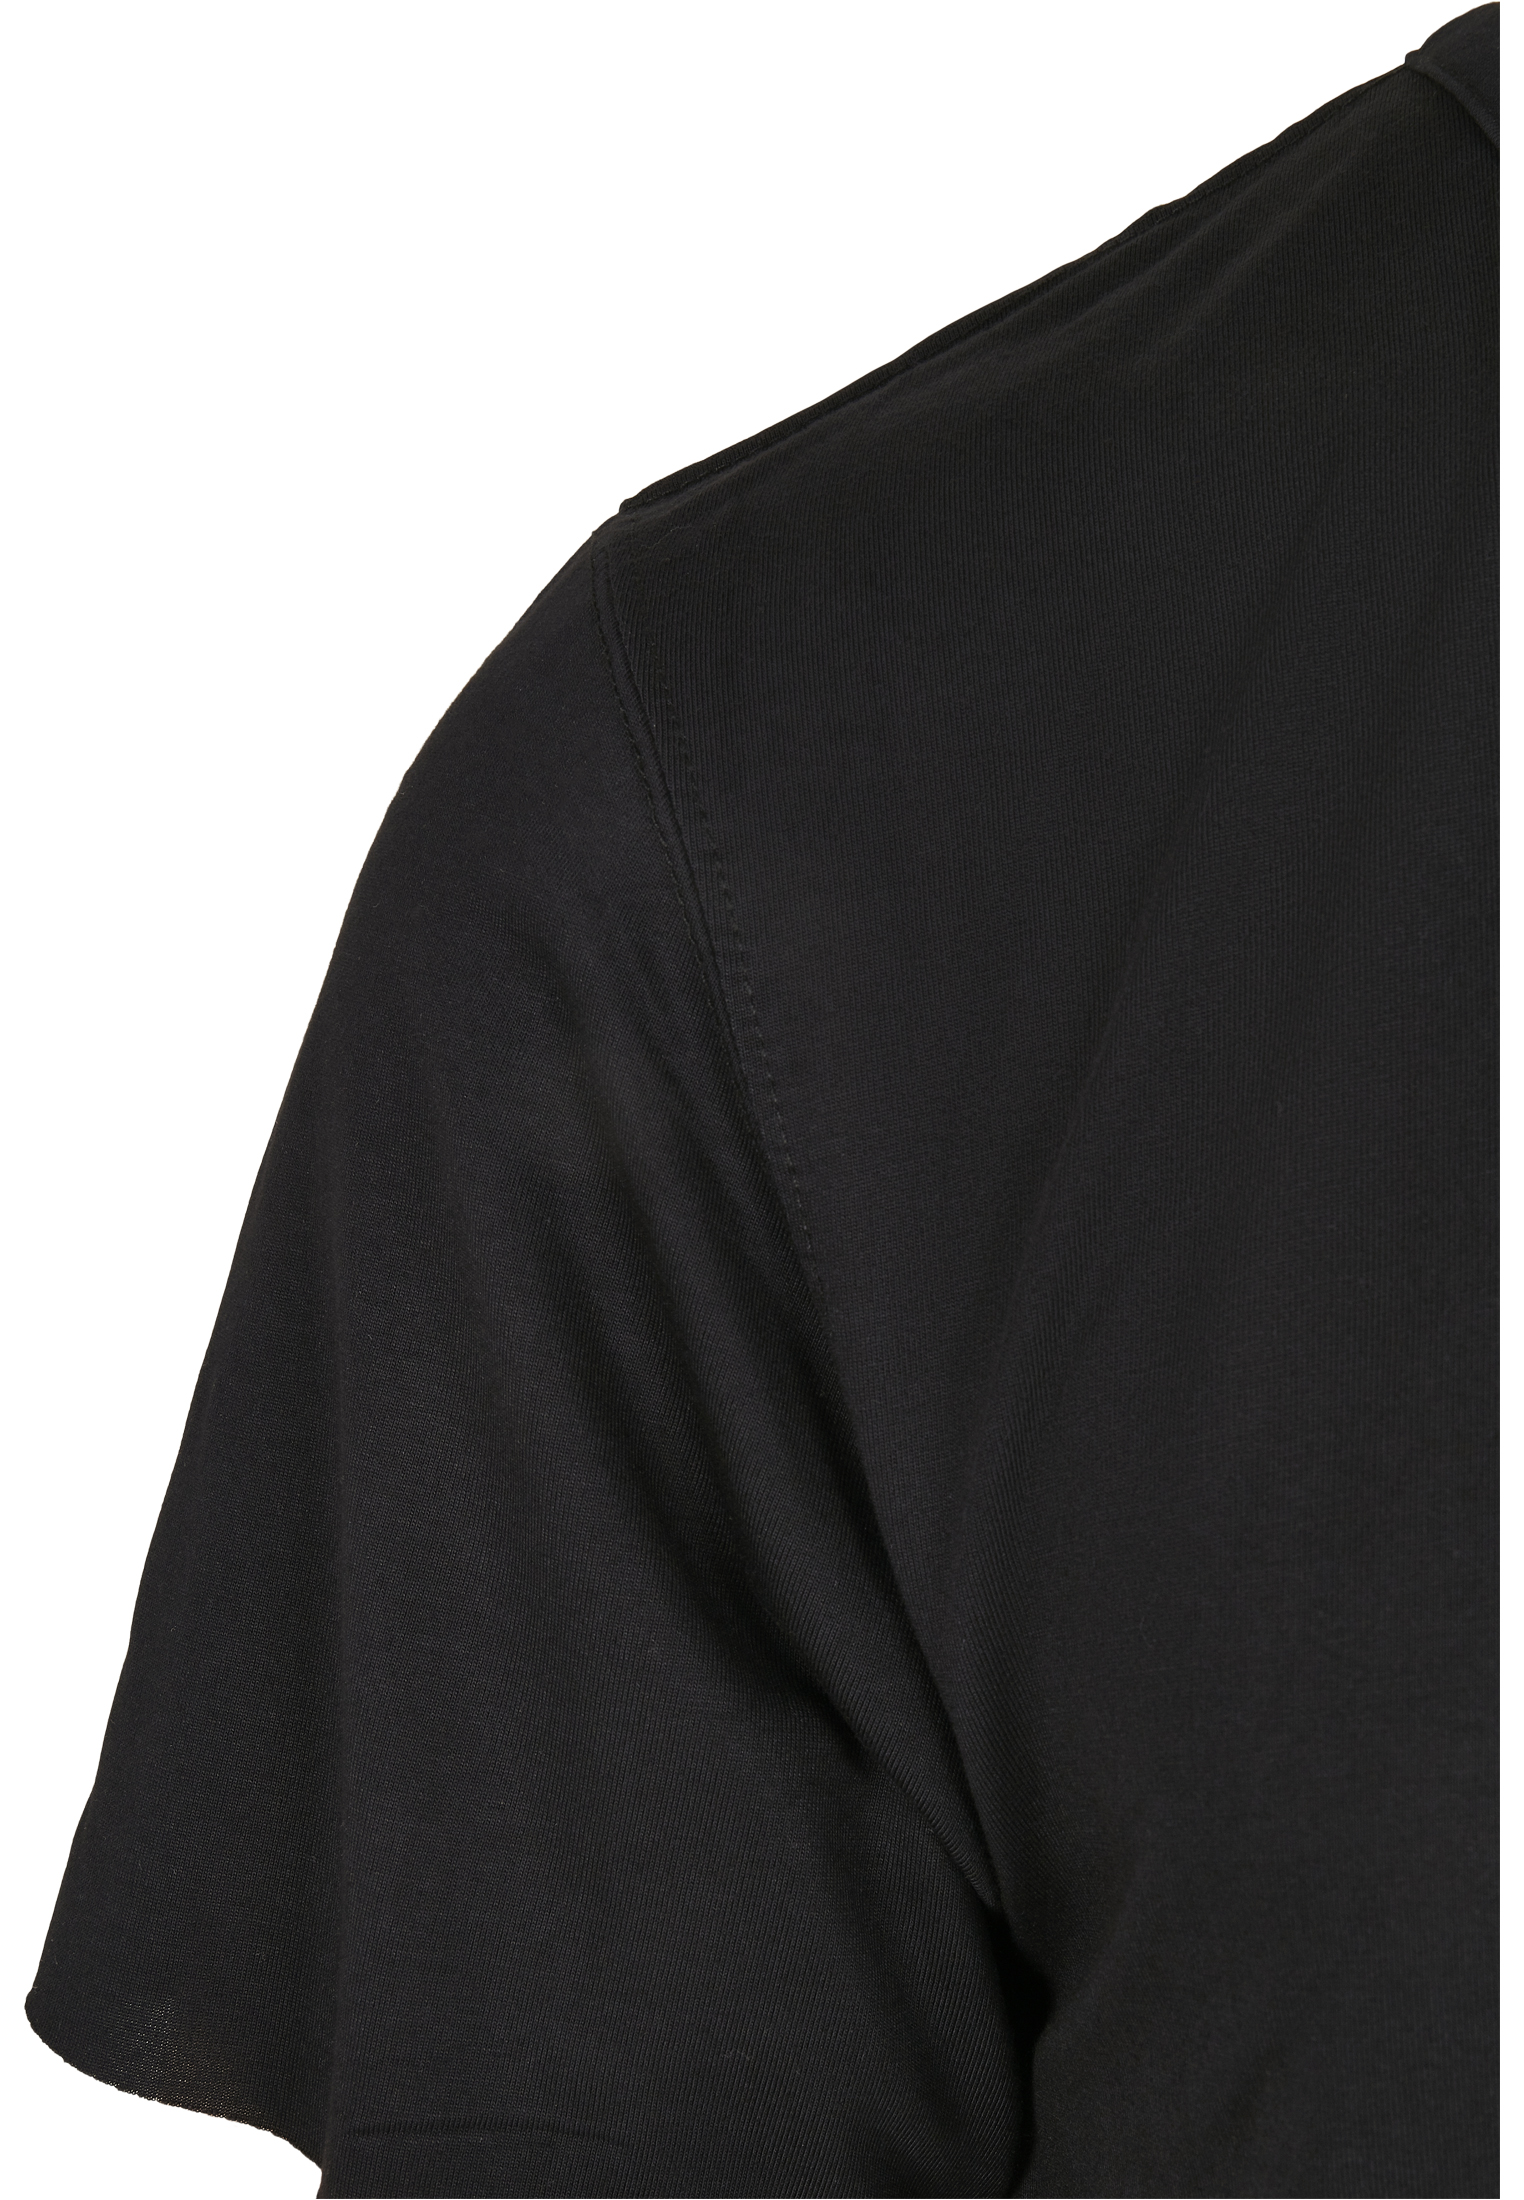 T-Shirts CSBL Deuces Long Layer Tee in Farbe black/pale peach